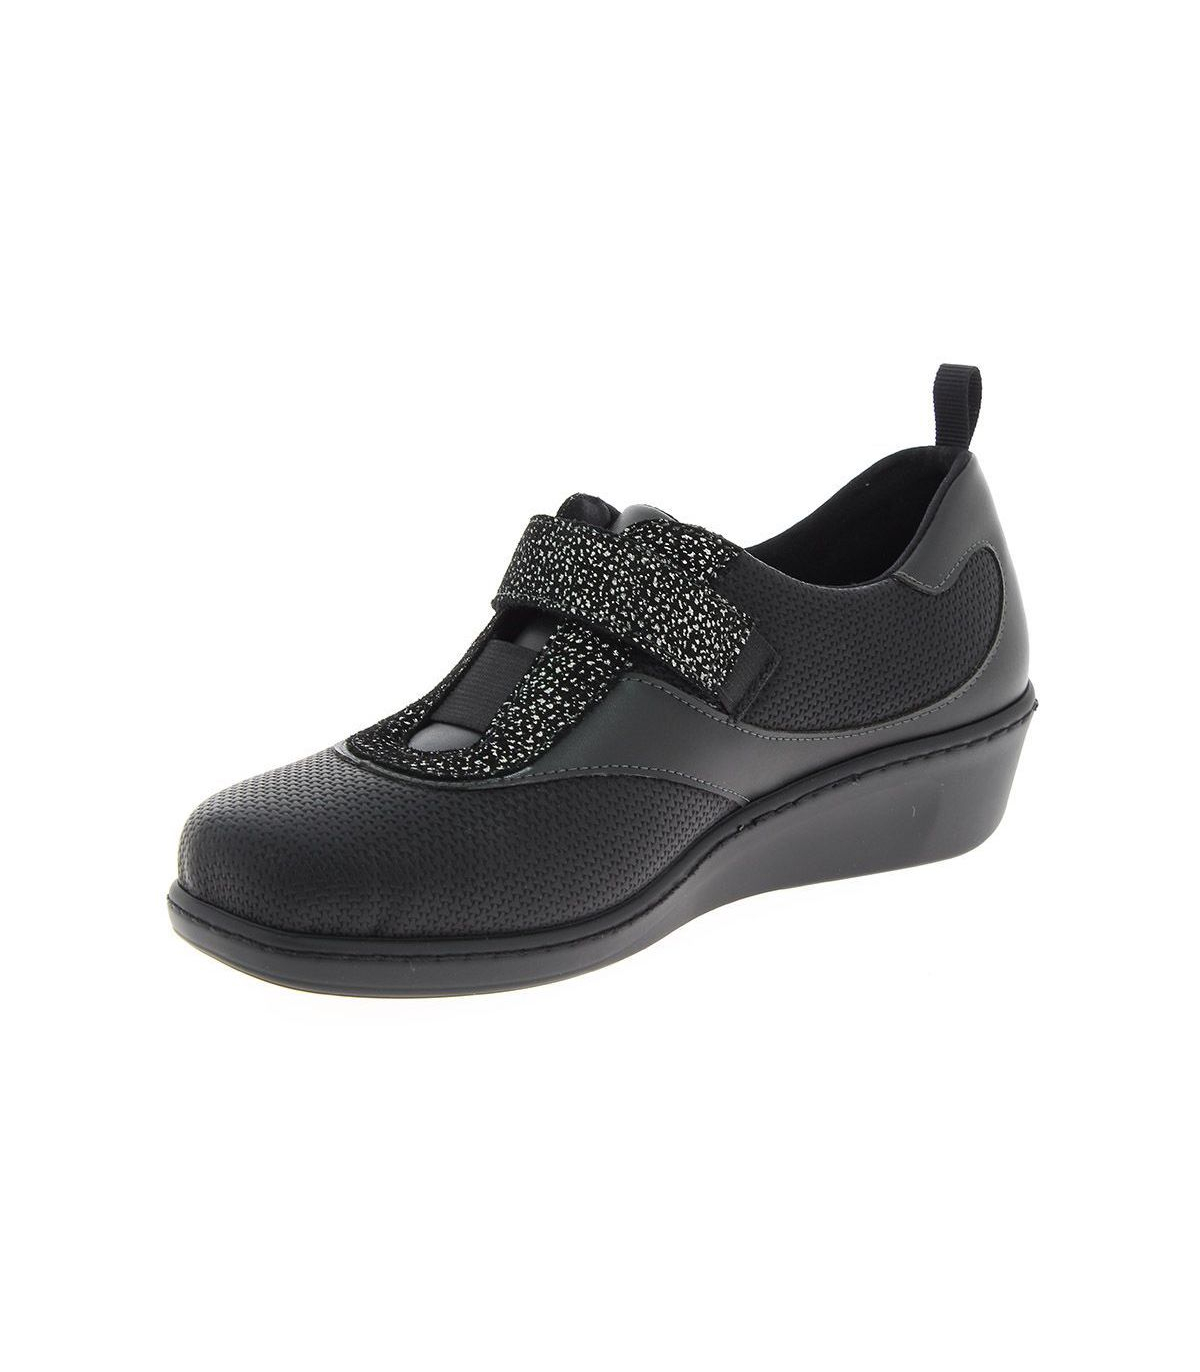 Chaussures Orthopédique Femmes B-238 - Noir